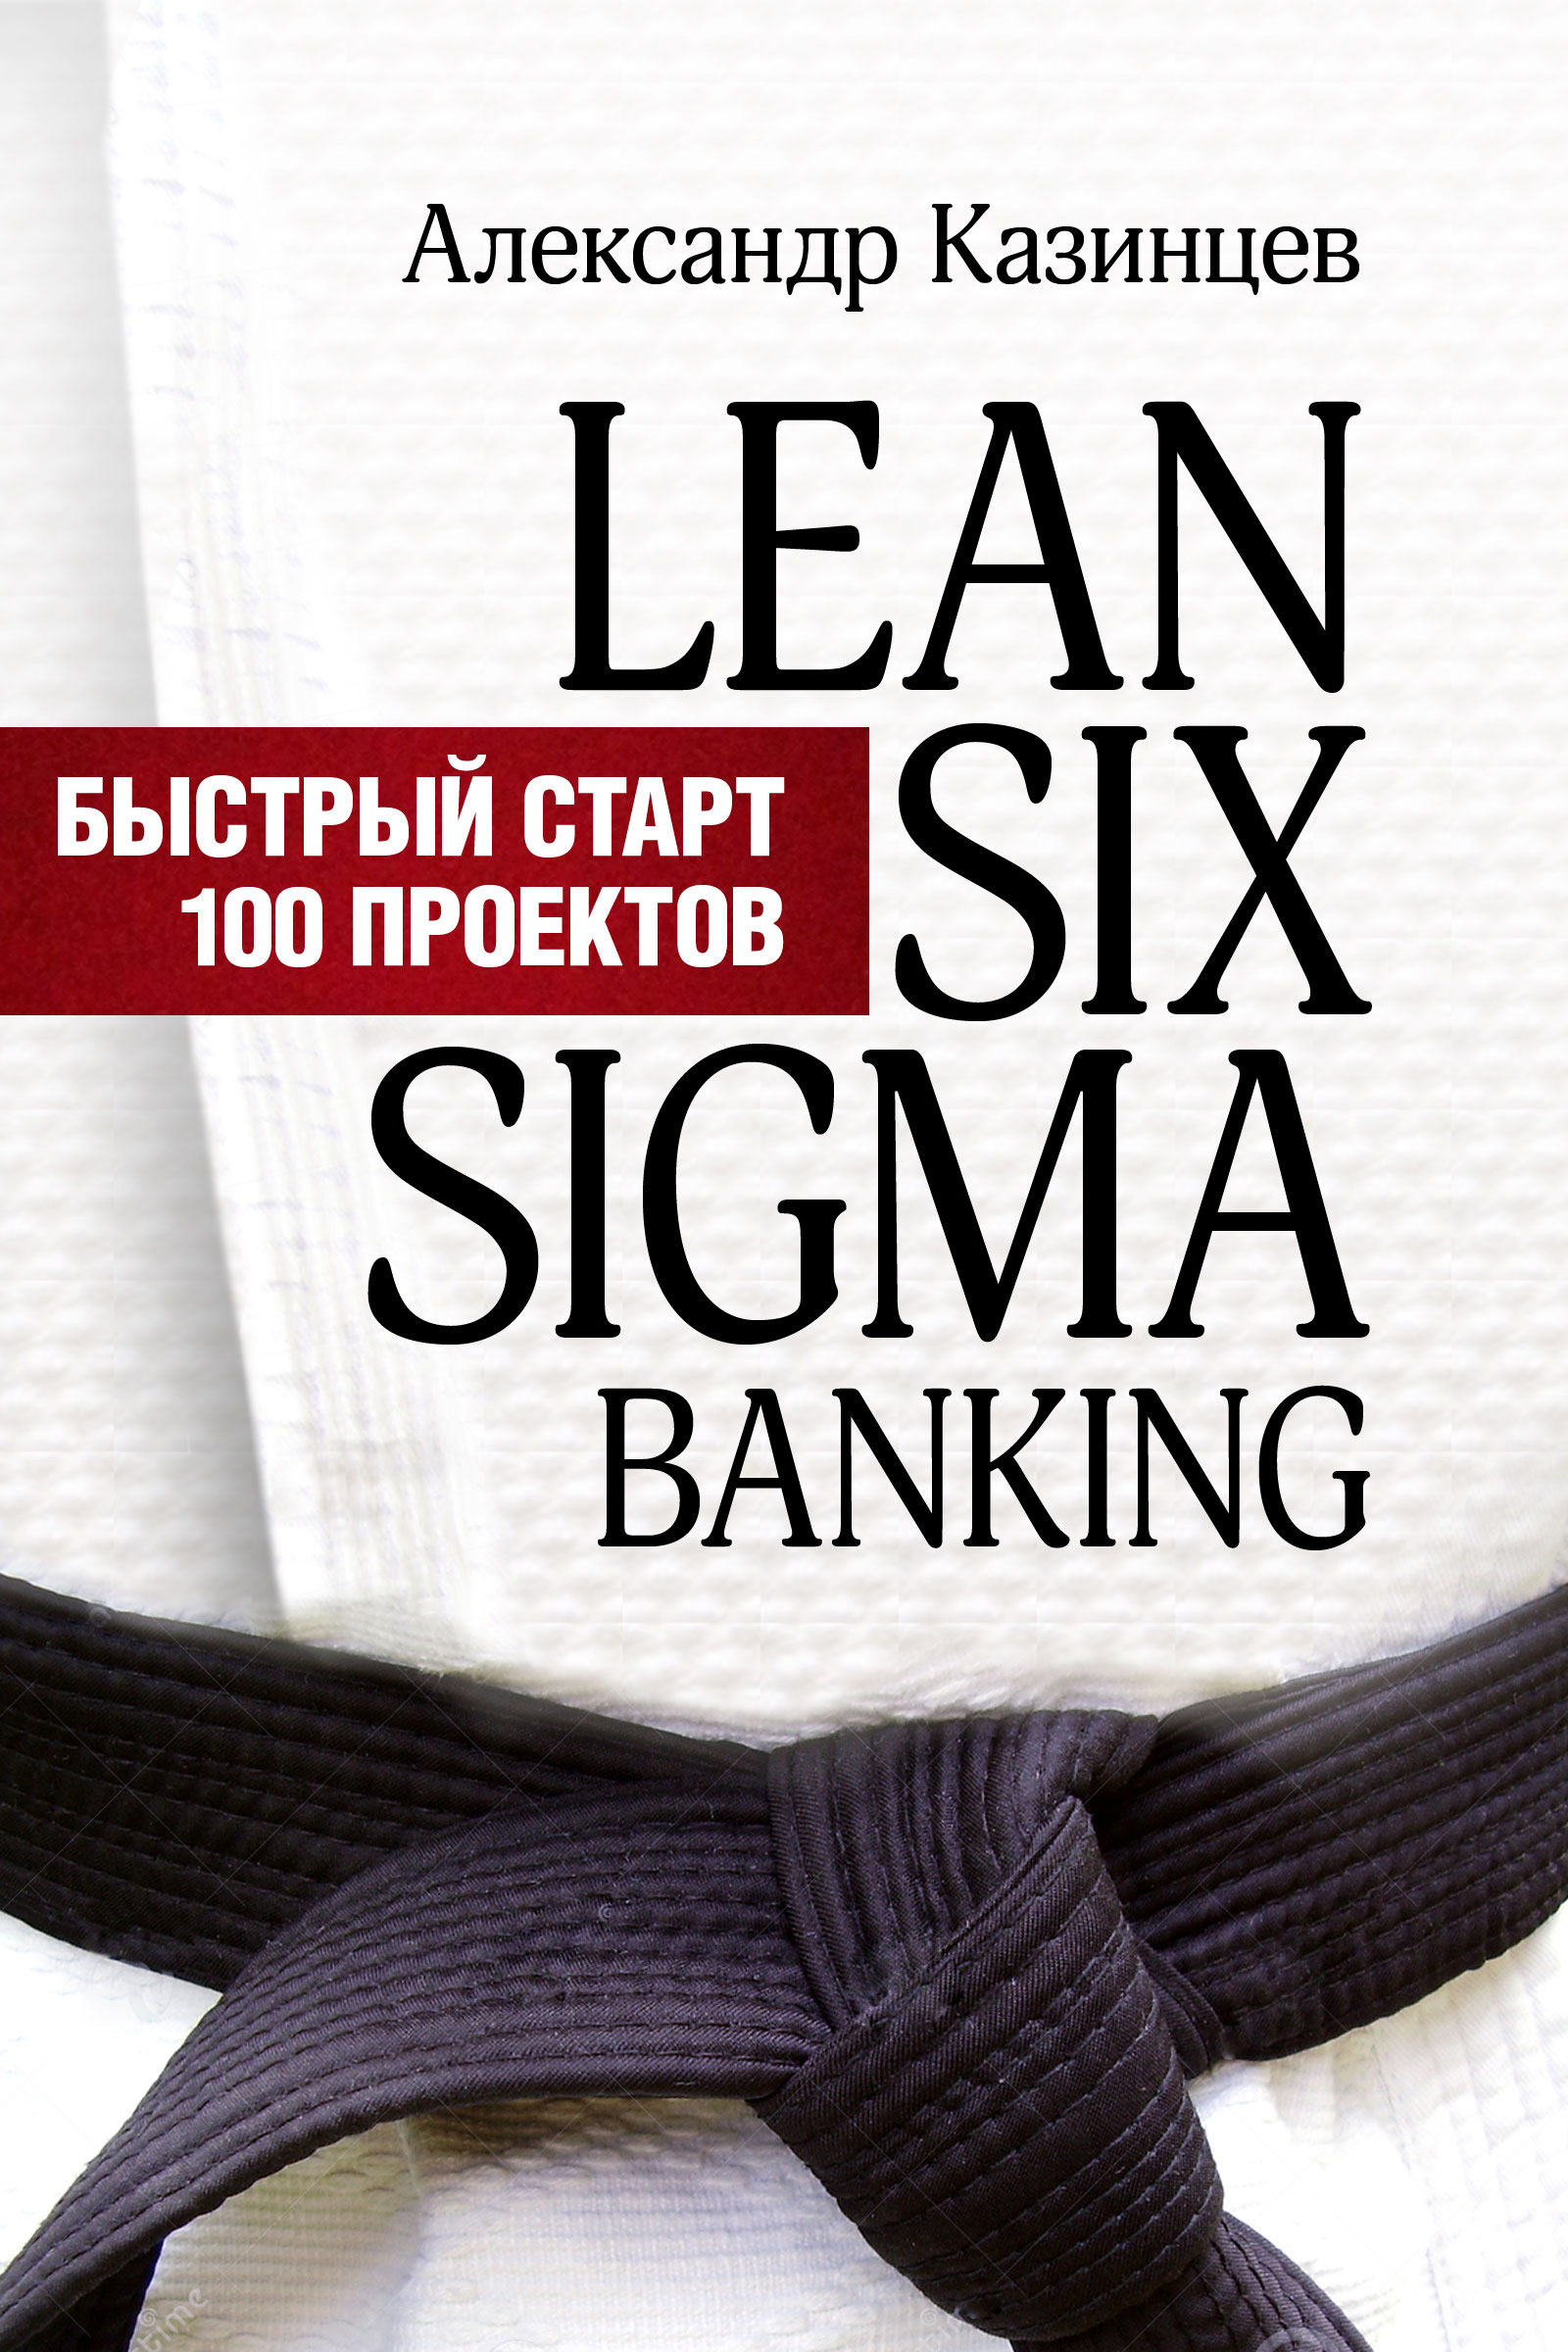 Книга  Lean Six Sigma Banking. Быстрый старт 100 проектов созданная Александр Казинцев может относится к жанру банковское дело, менеджмент и кадры, привлечение клиентов, управление персоналом. Стоимость электронной книги Lean Six Sigma Banking. Быстрый старт 100 проектов с идентификатором 8703066 составляет 400.00 руб.